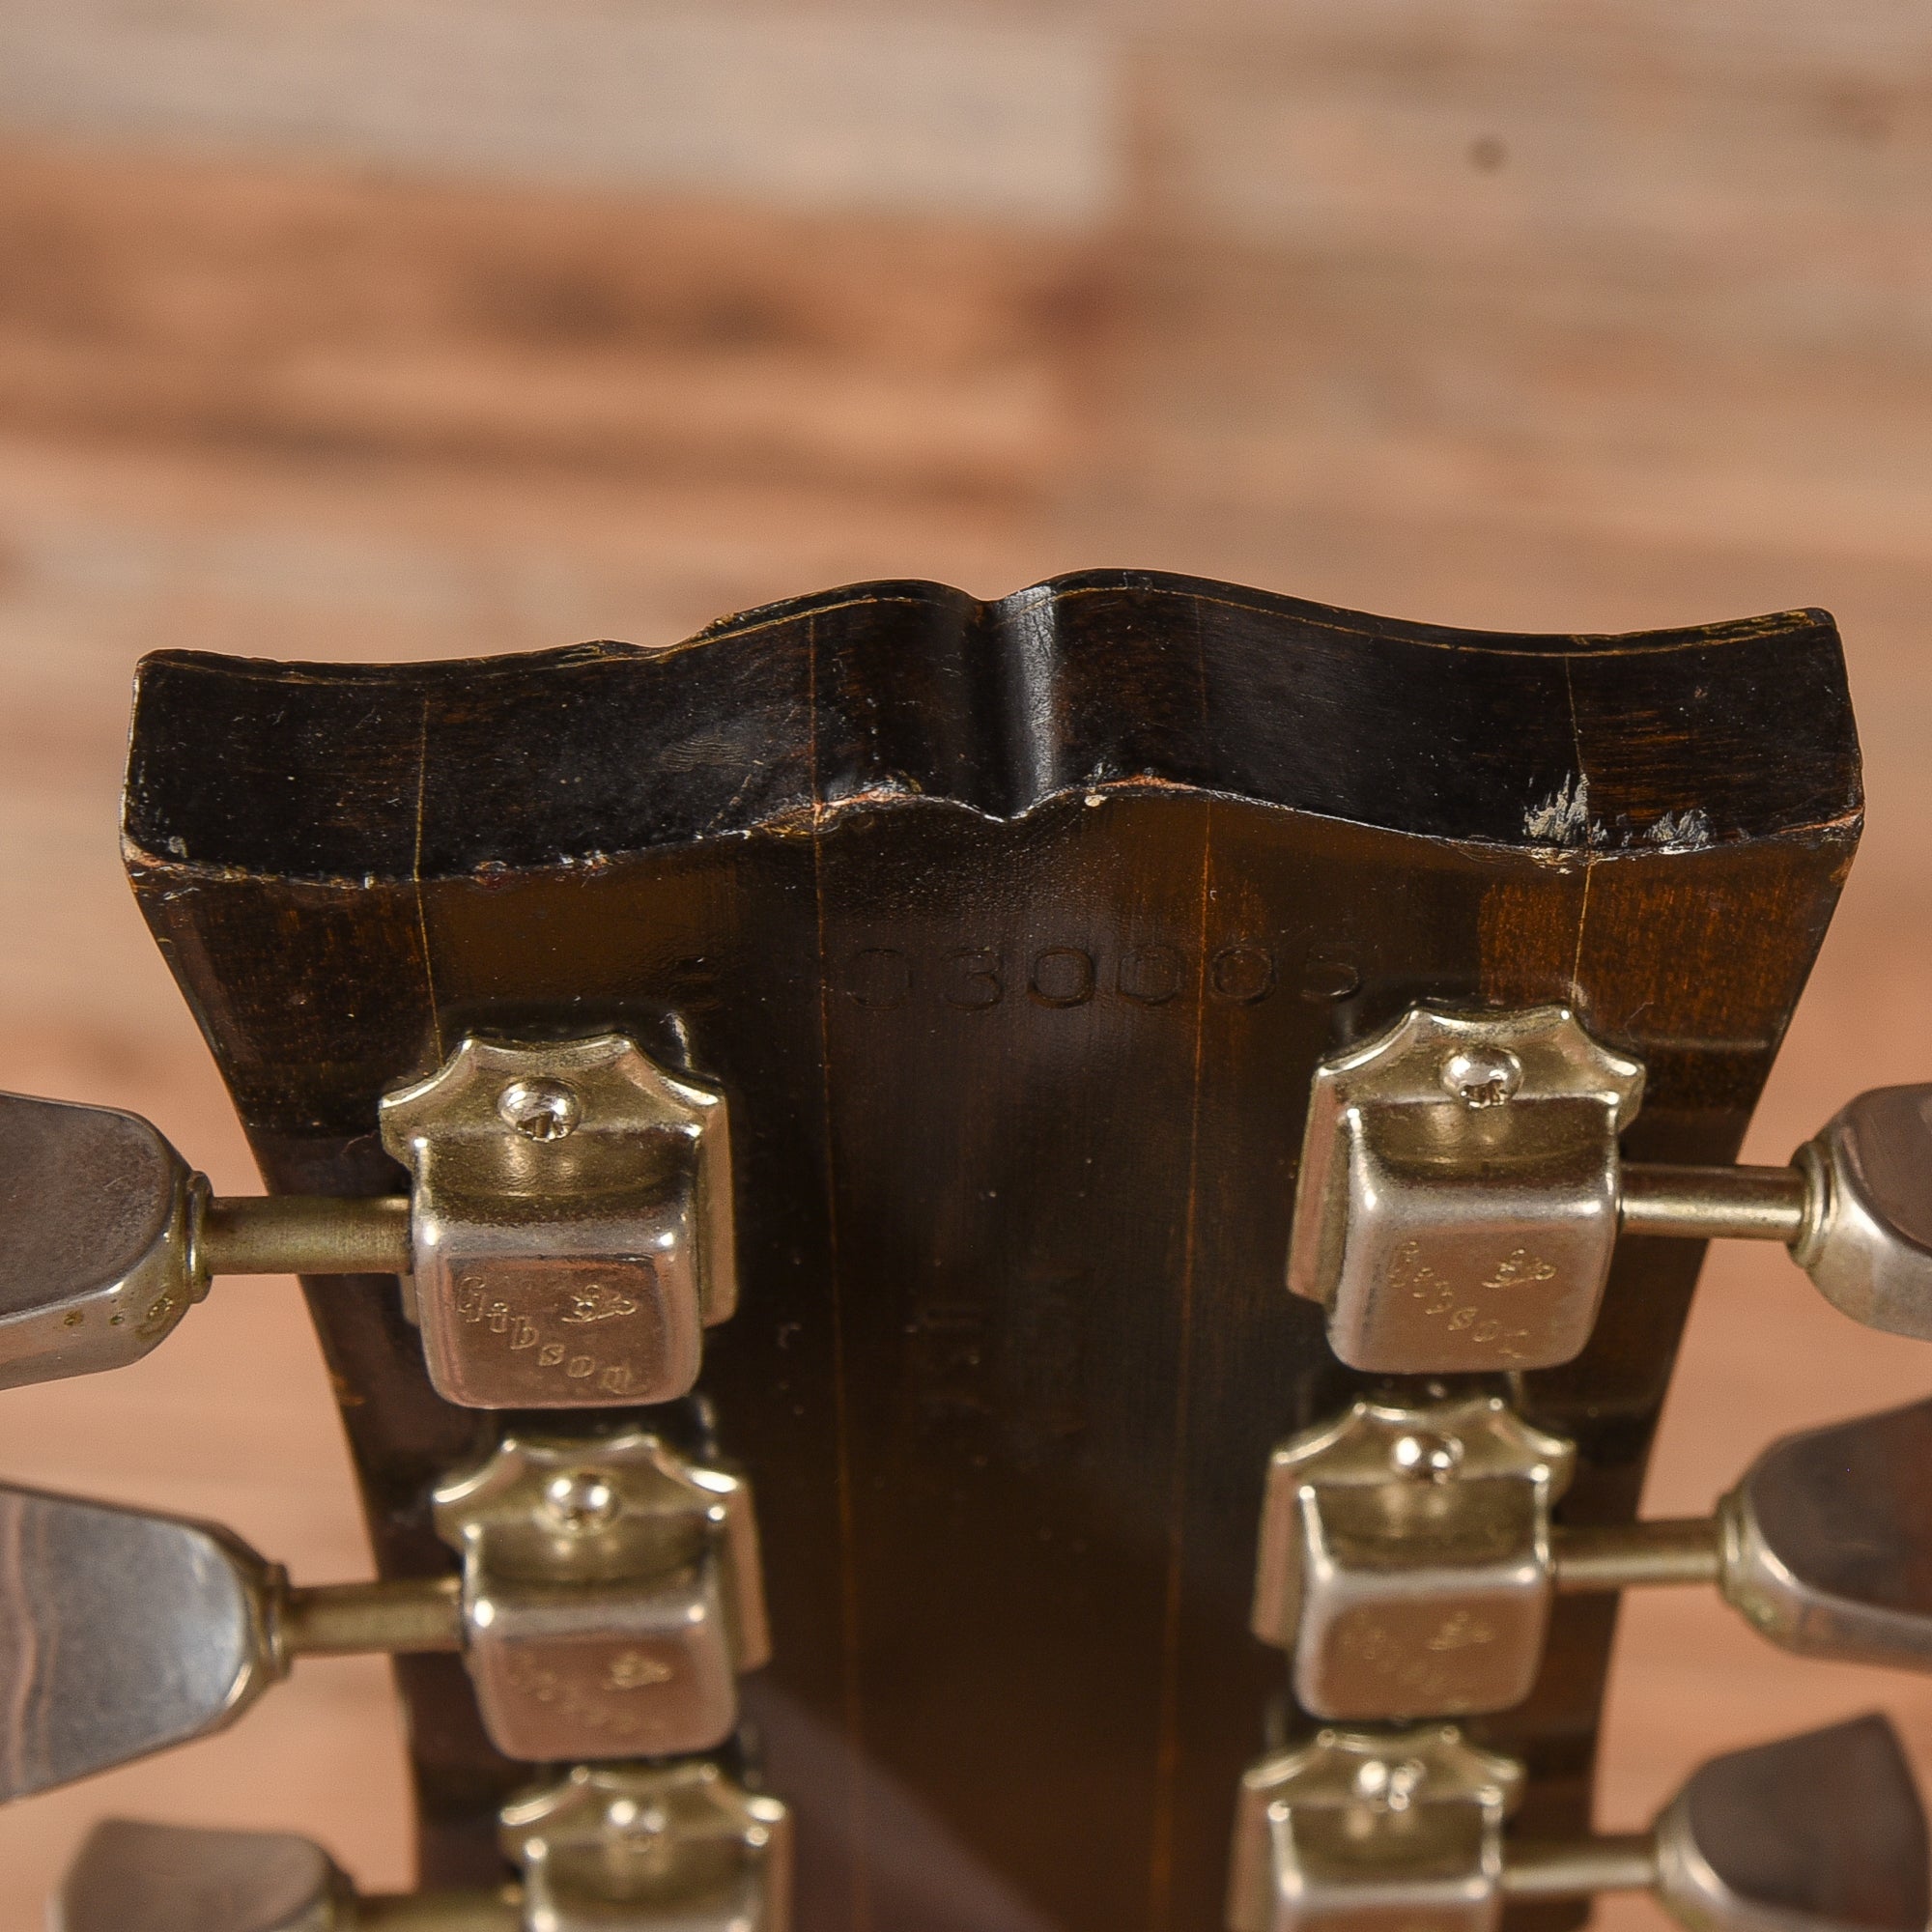 Gibson ES-335 Sunburst 1980